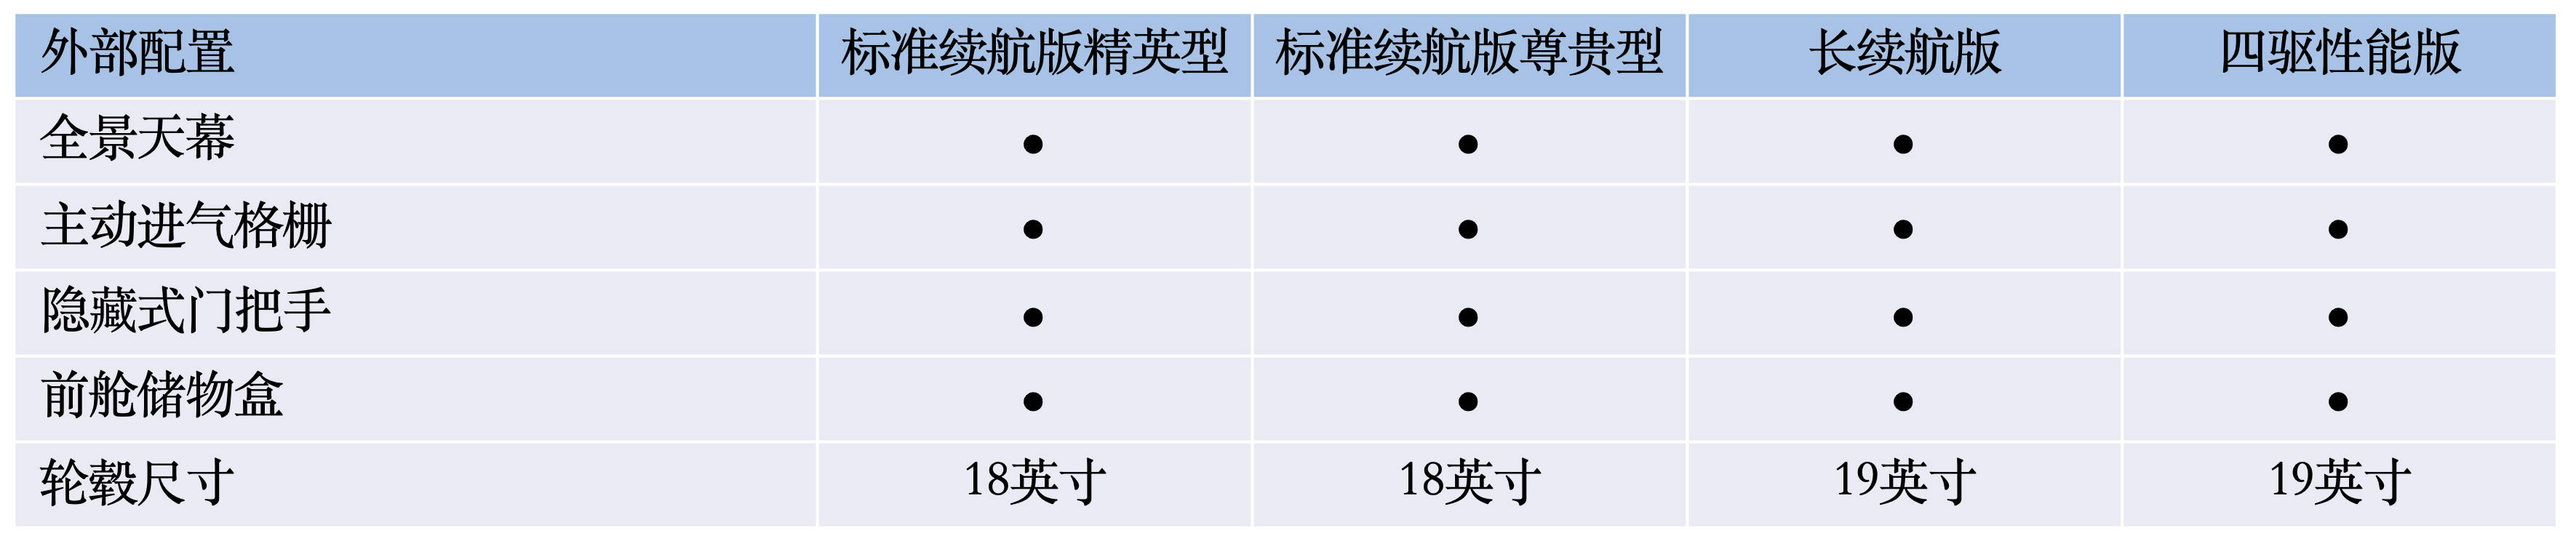 北京一幼兒園2人確診 113名兒童均安排家長陪同隔離